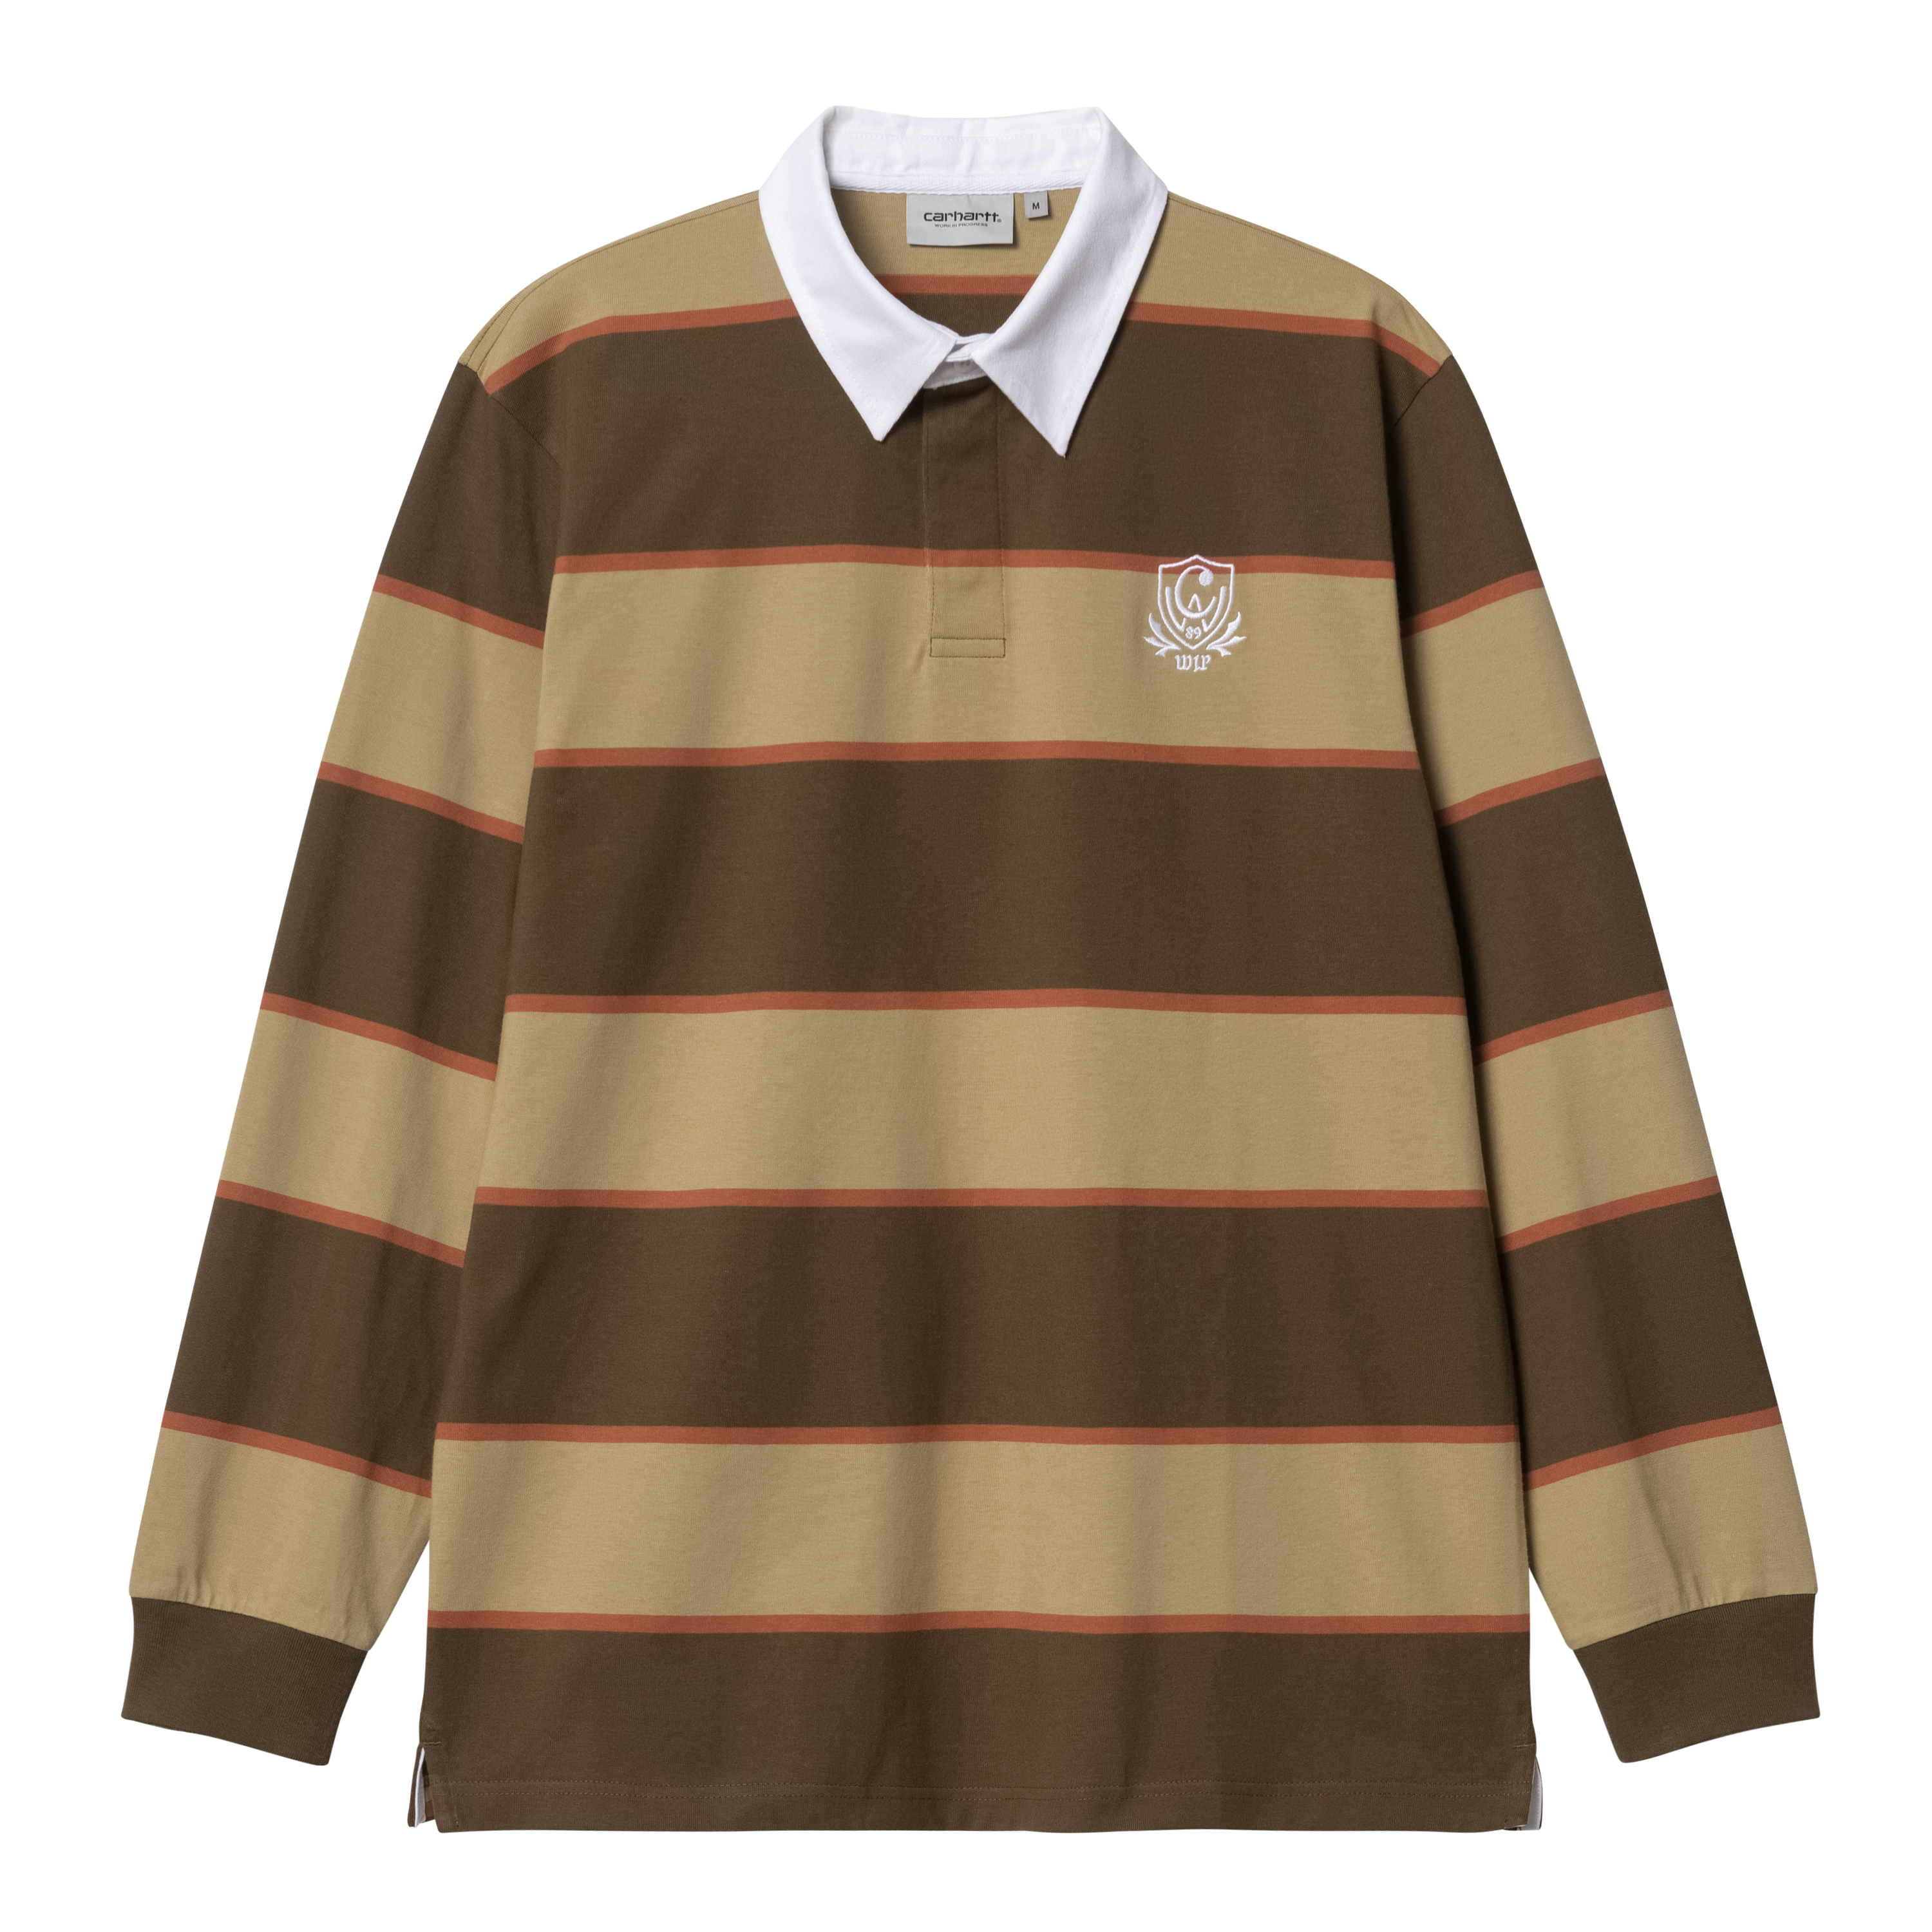 Carhartt WIP AMERICAN SCRIPT - Camiseta básica - brown/marrón 